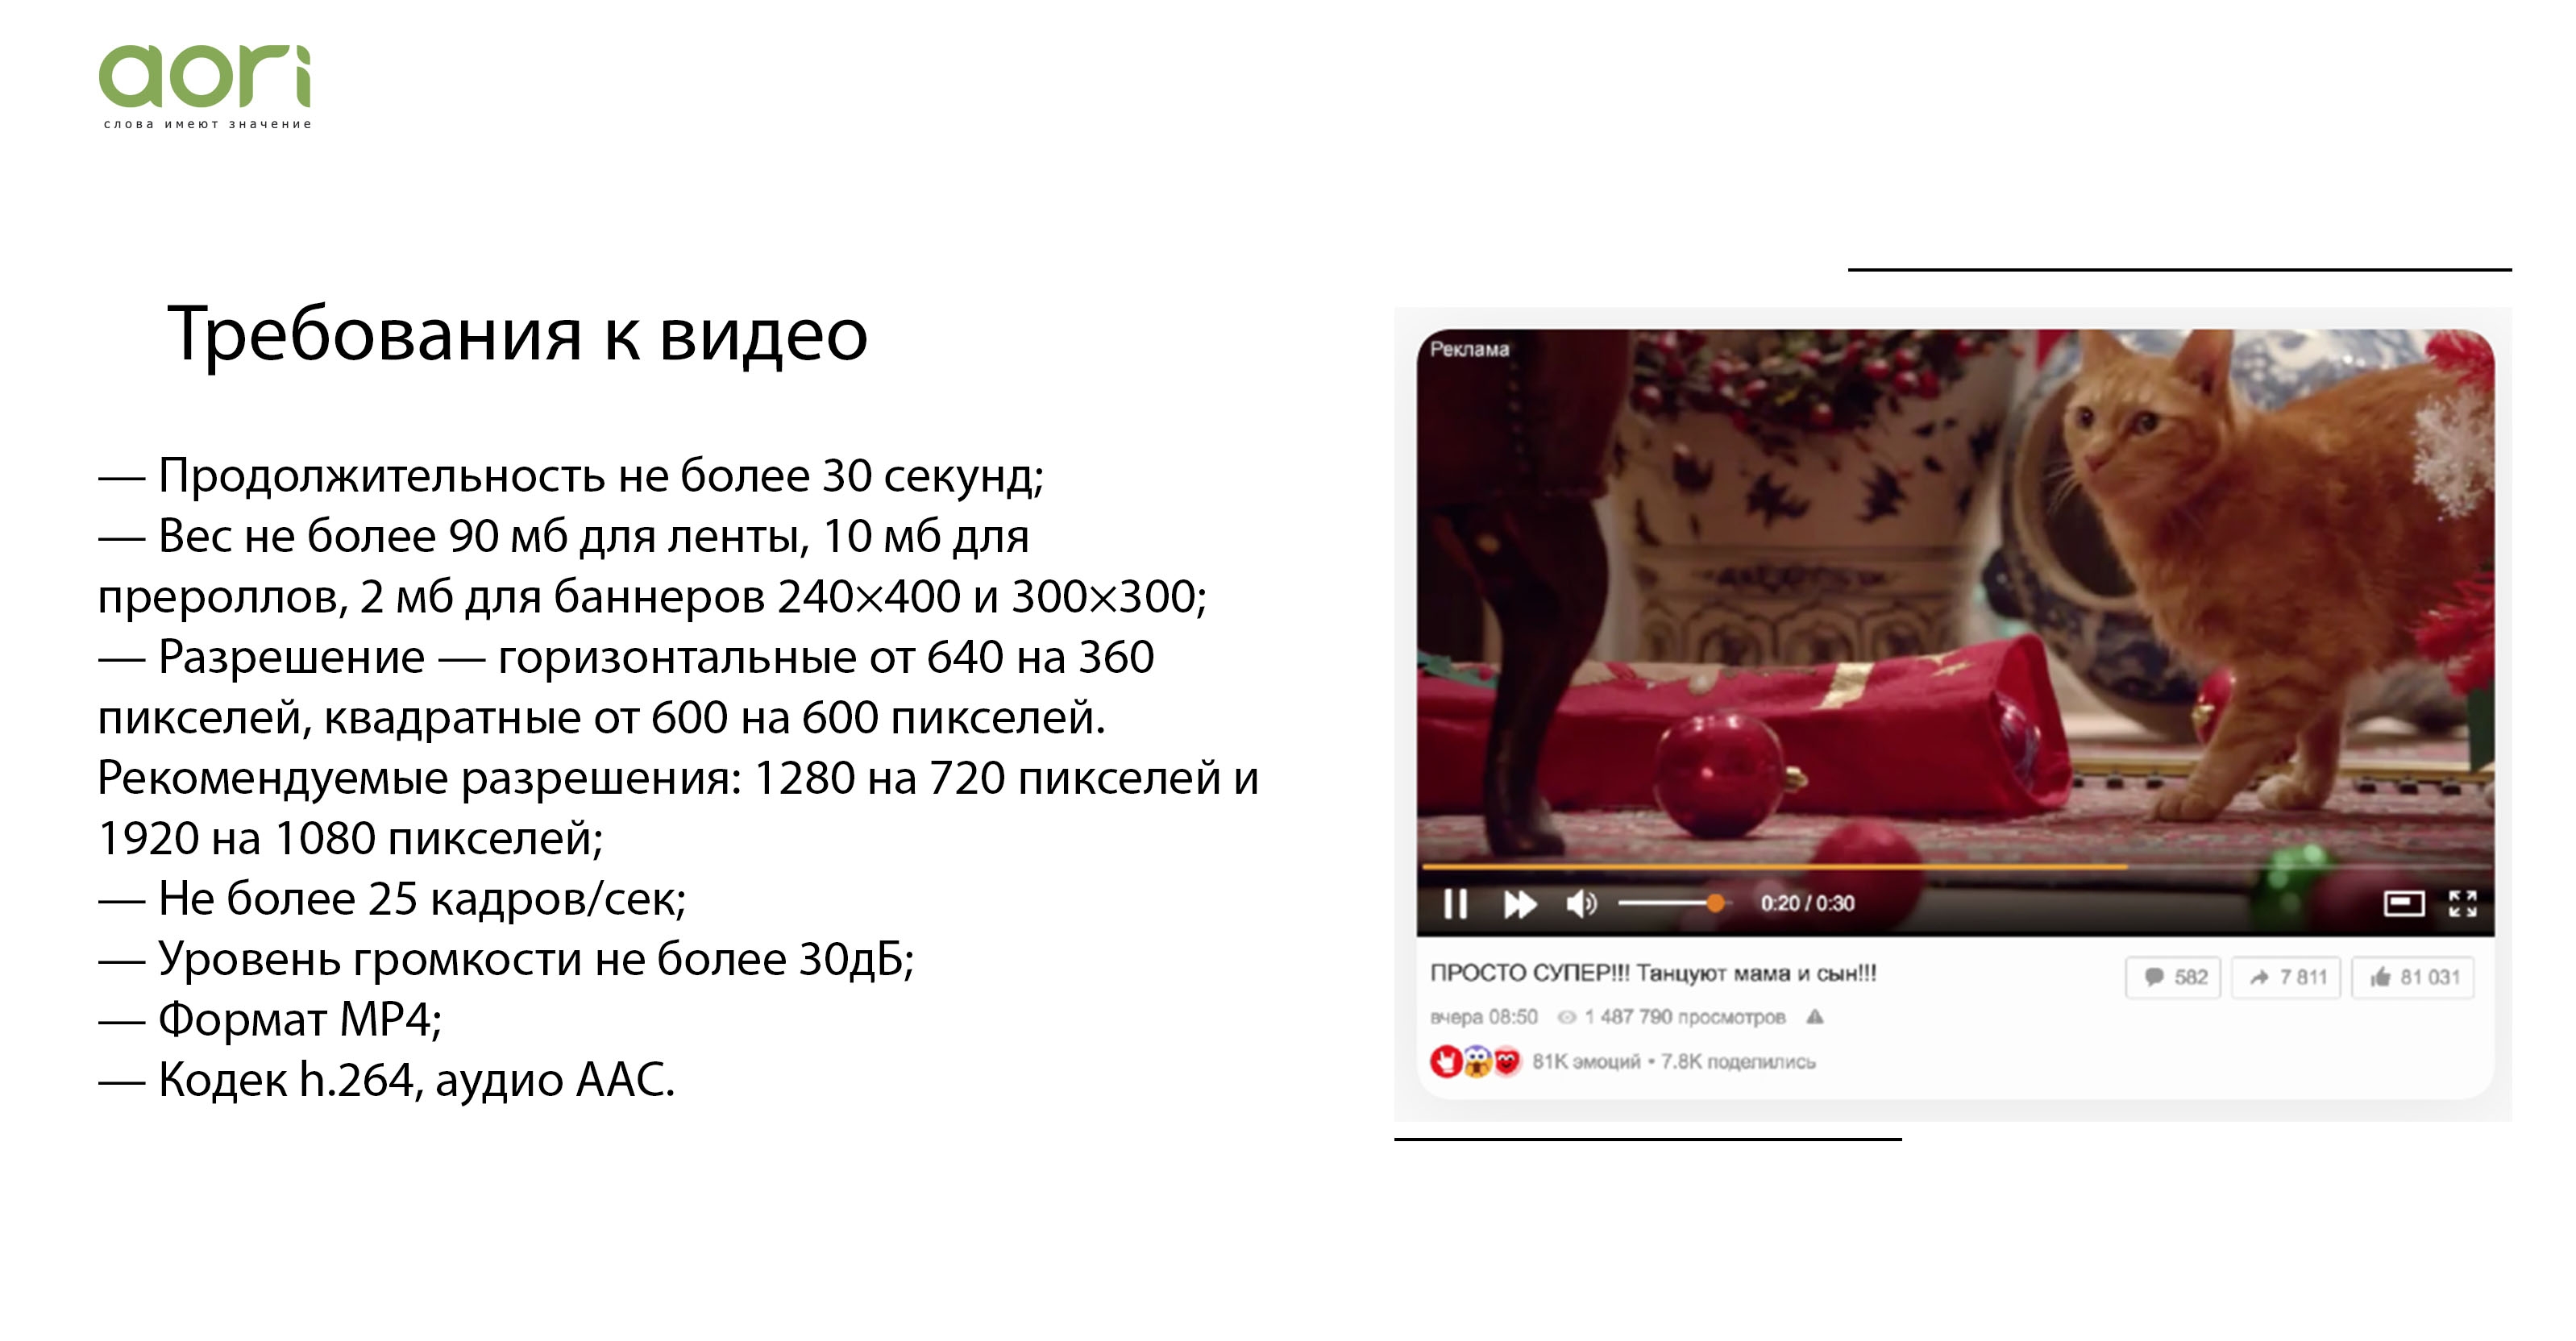 Преролл в видеорекламе в Одноклассниках